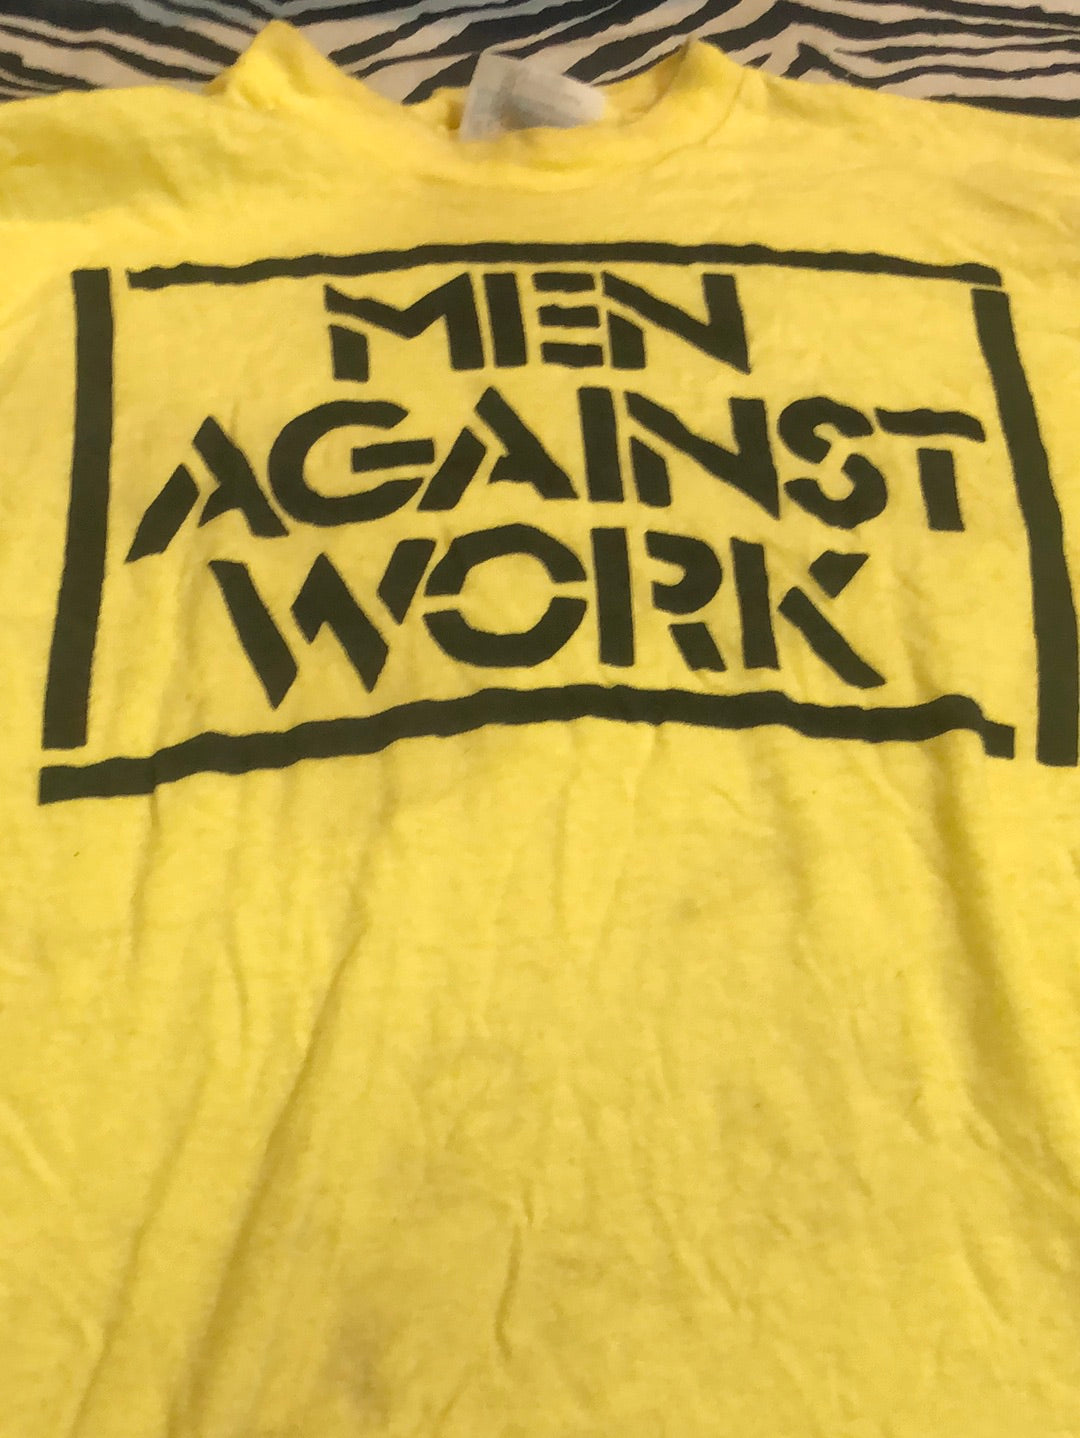 “Men Against Work" Vintage T-Shirt